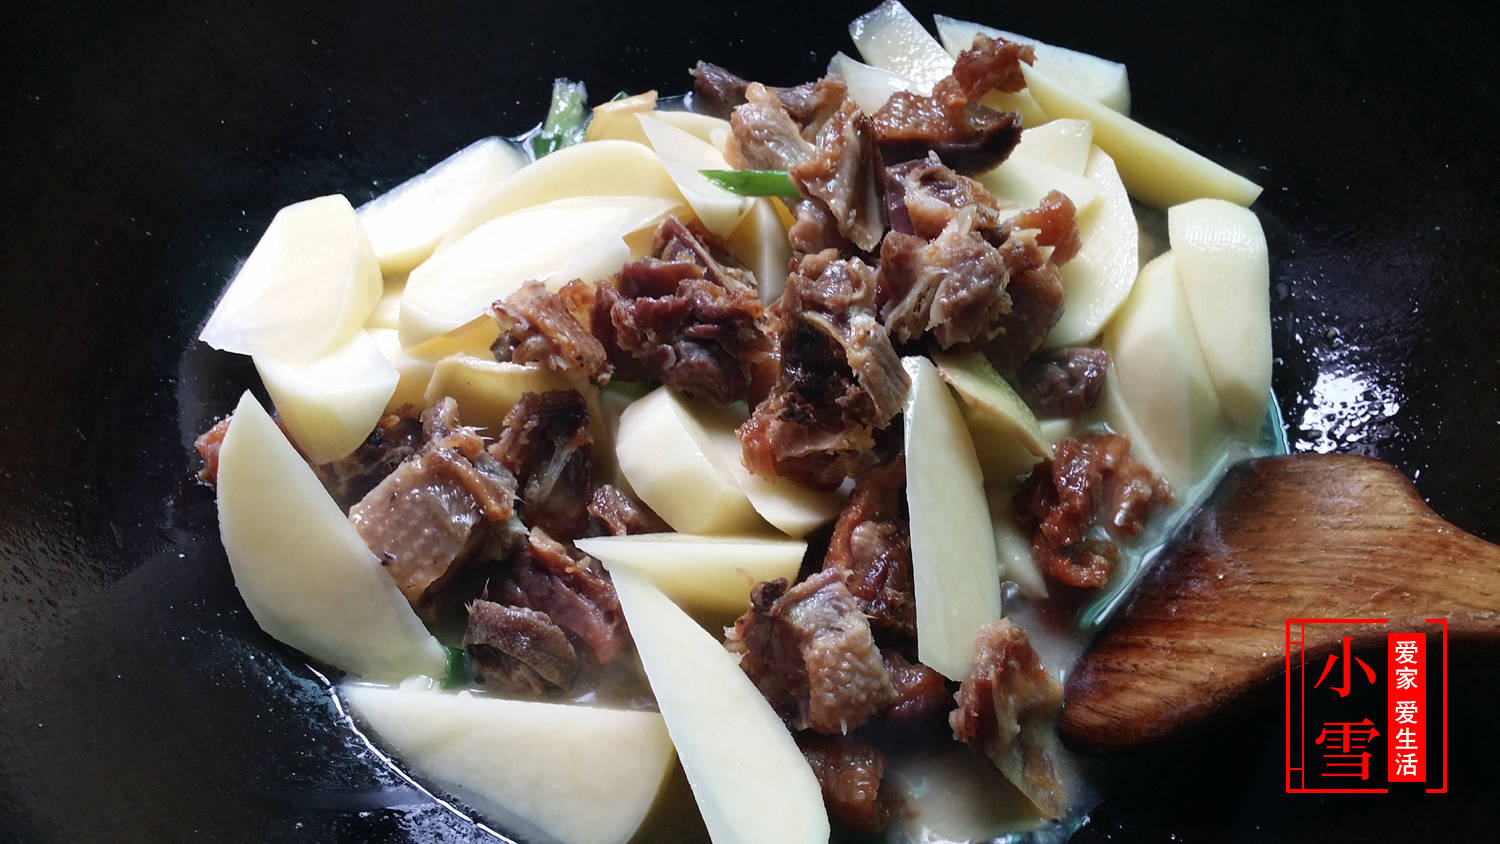 原创腊鸭焖土豆,食材简单又便宜,配上砂锅一炖,香味扑面而来